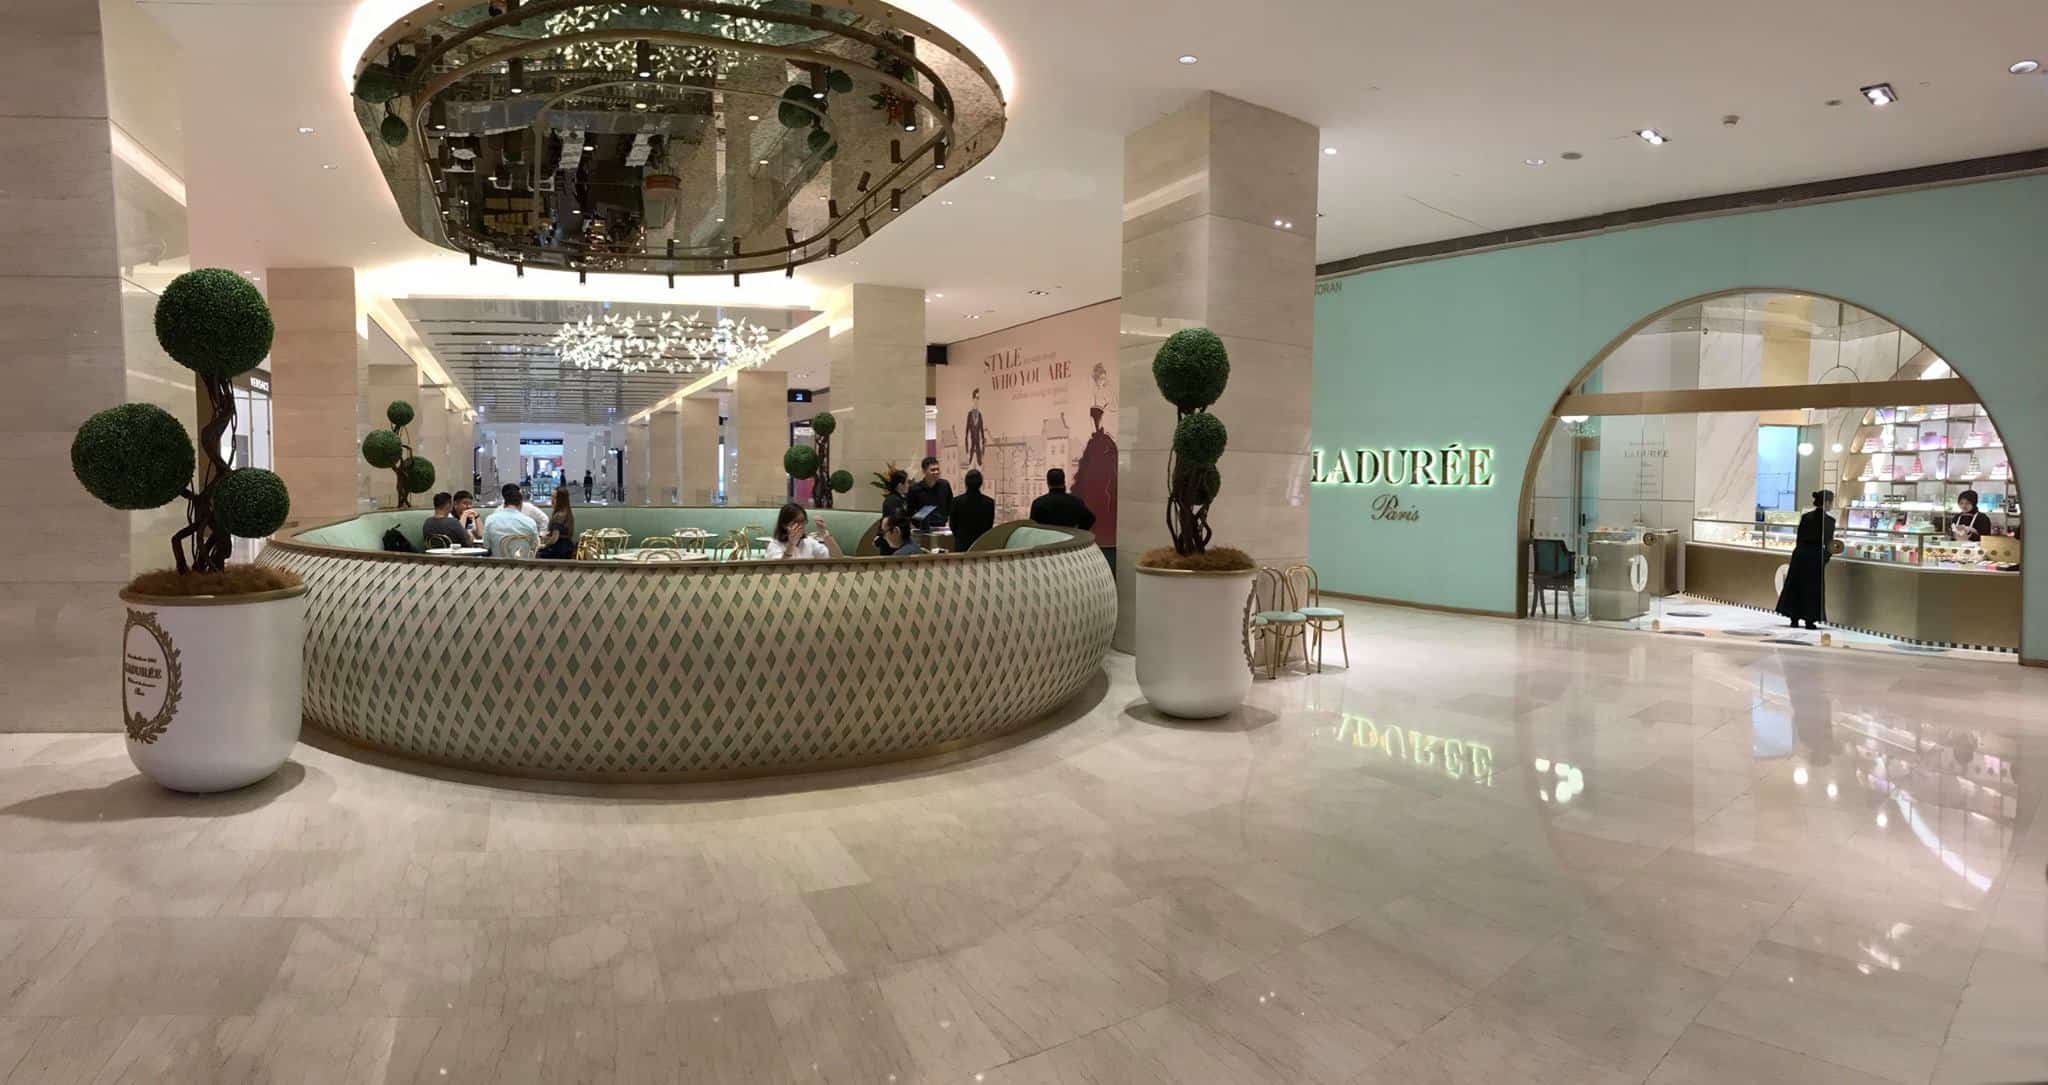 Laduree Paris at Pavilion Mall in Kuala Lumpur // Travel Mermaid